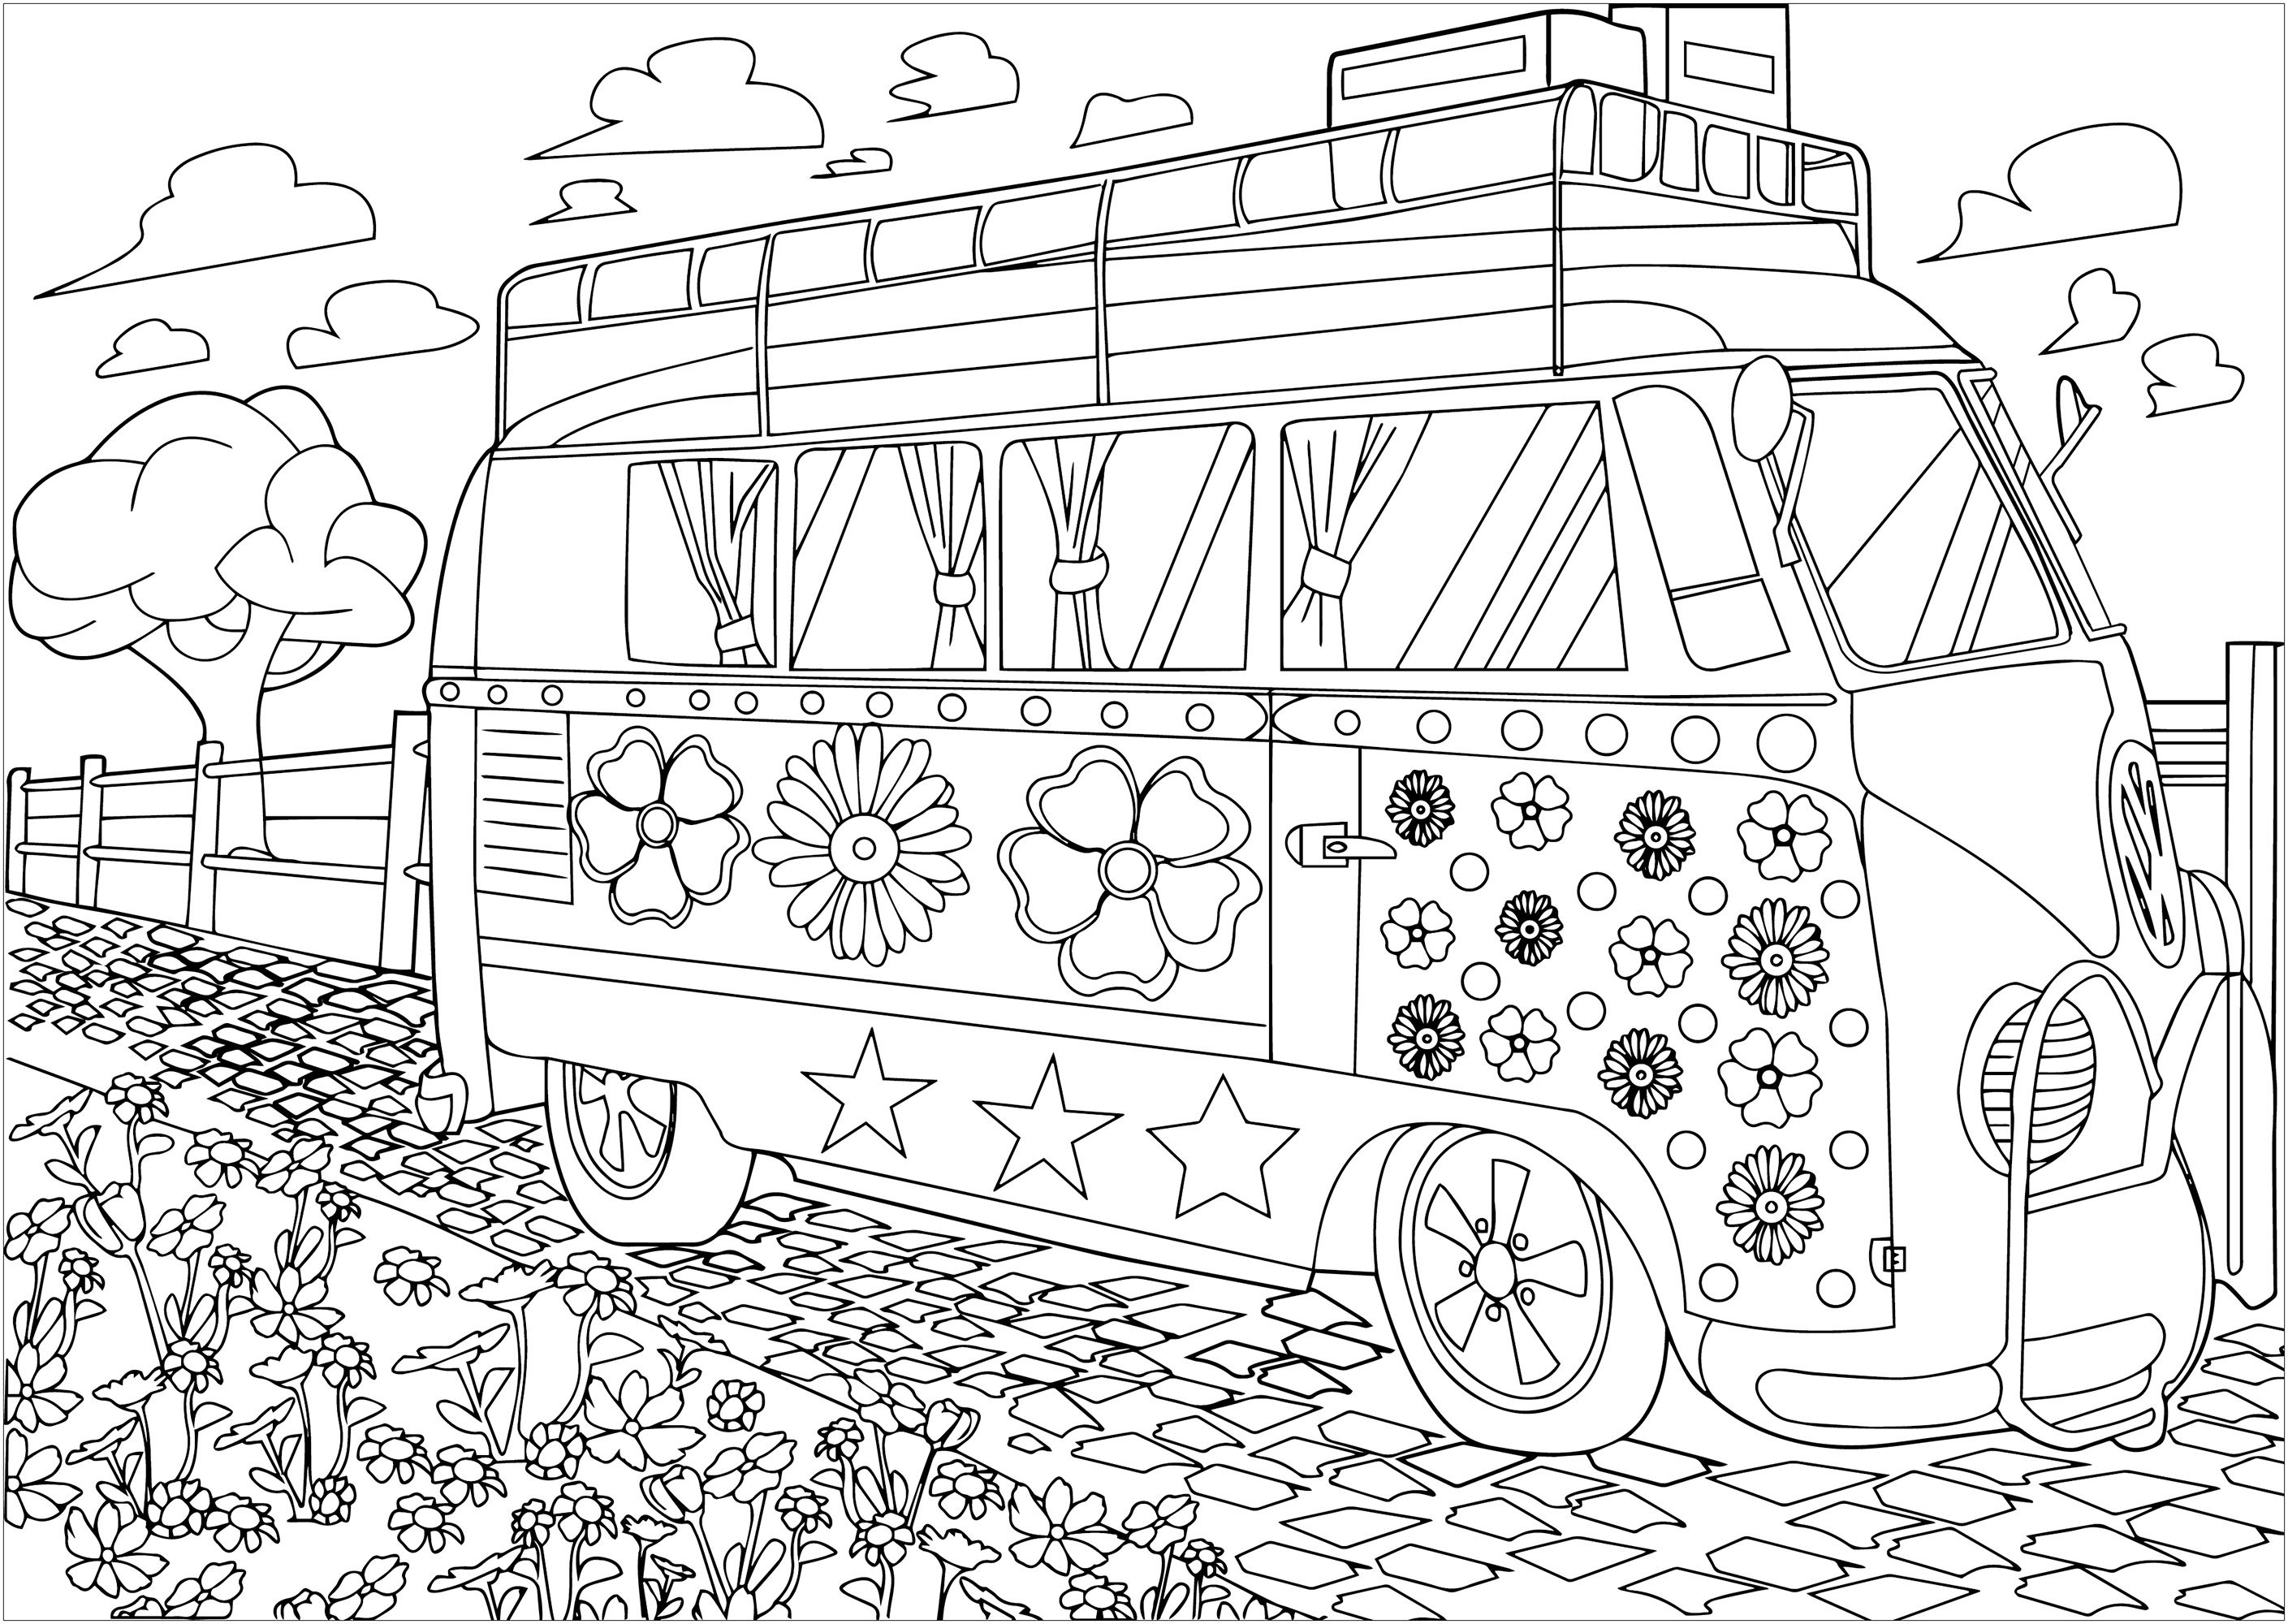 Le combi Volkswagen hippy de Woodstock à colorier